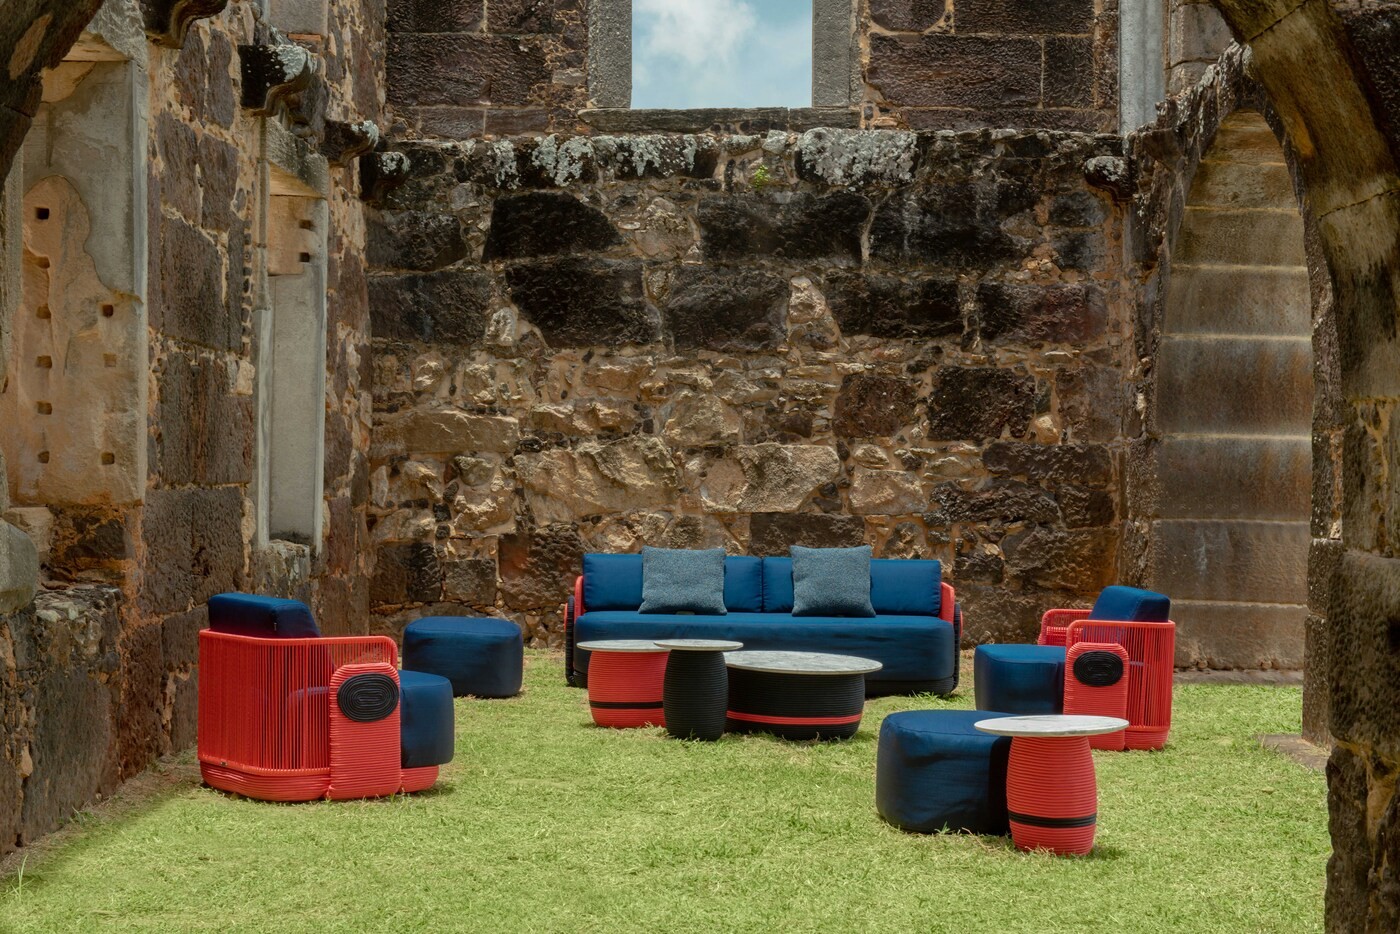 Nova coleção de mobiliário outdoor tem design inspirado na cultura latina (Foto: Reinaldo Giarola)